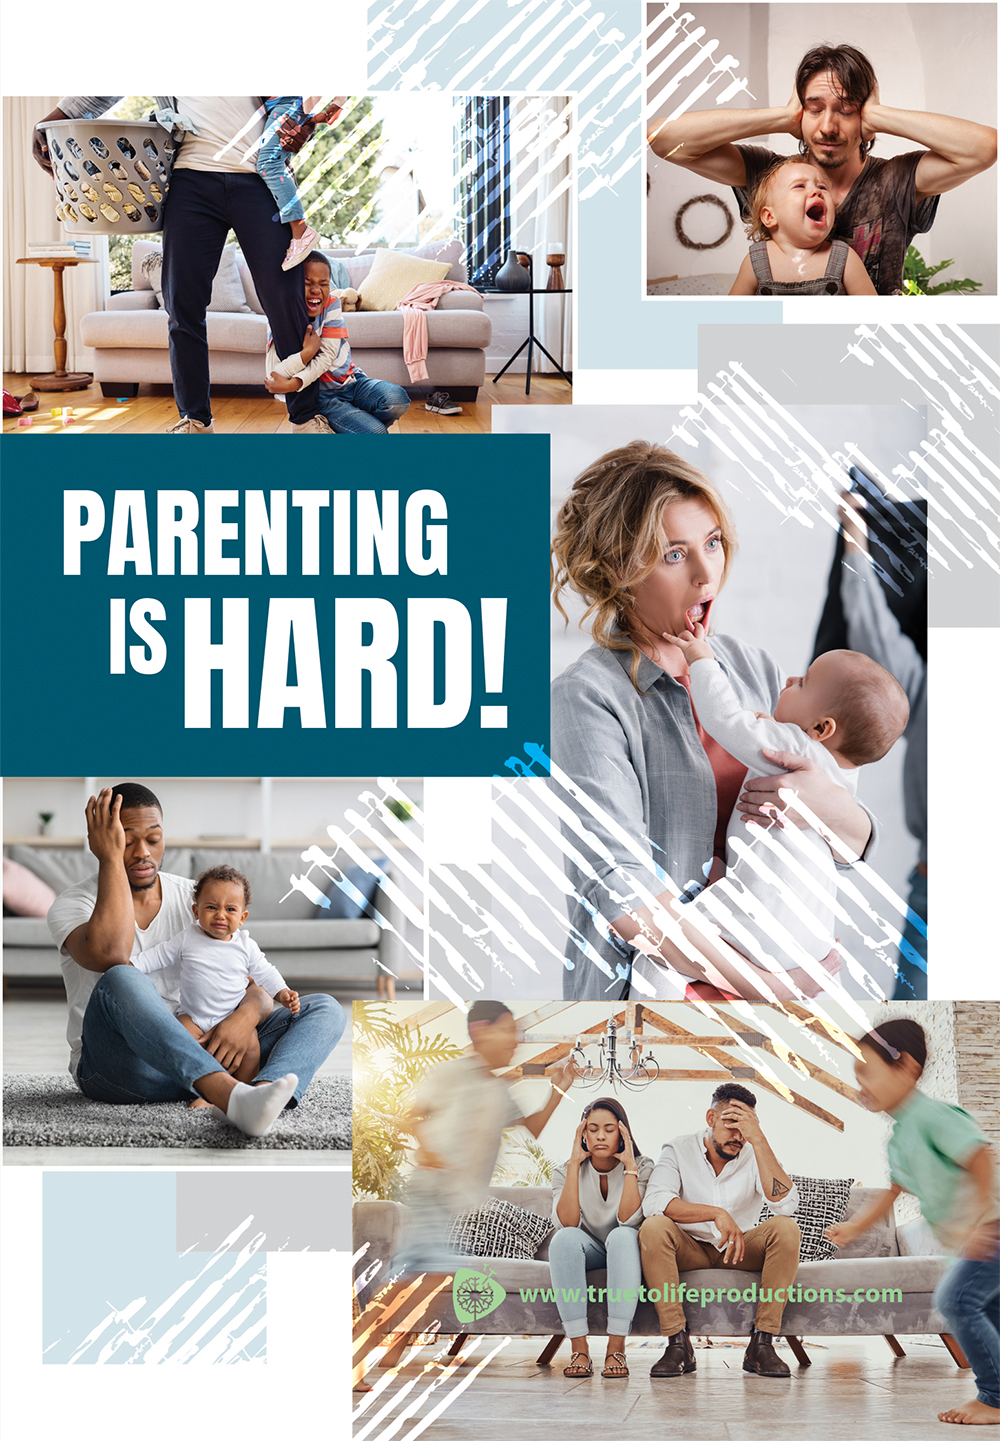 DVD, Parenting is Hard  Baby Bottle Promo - Digital Link